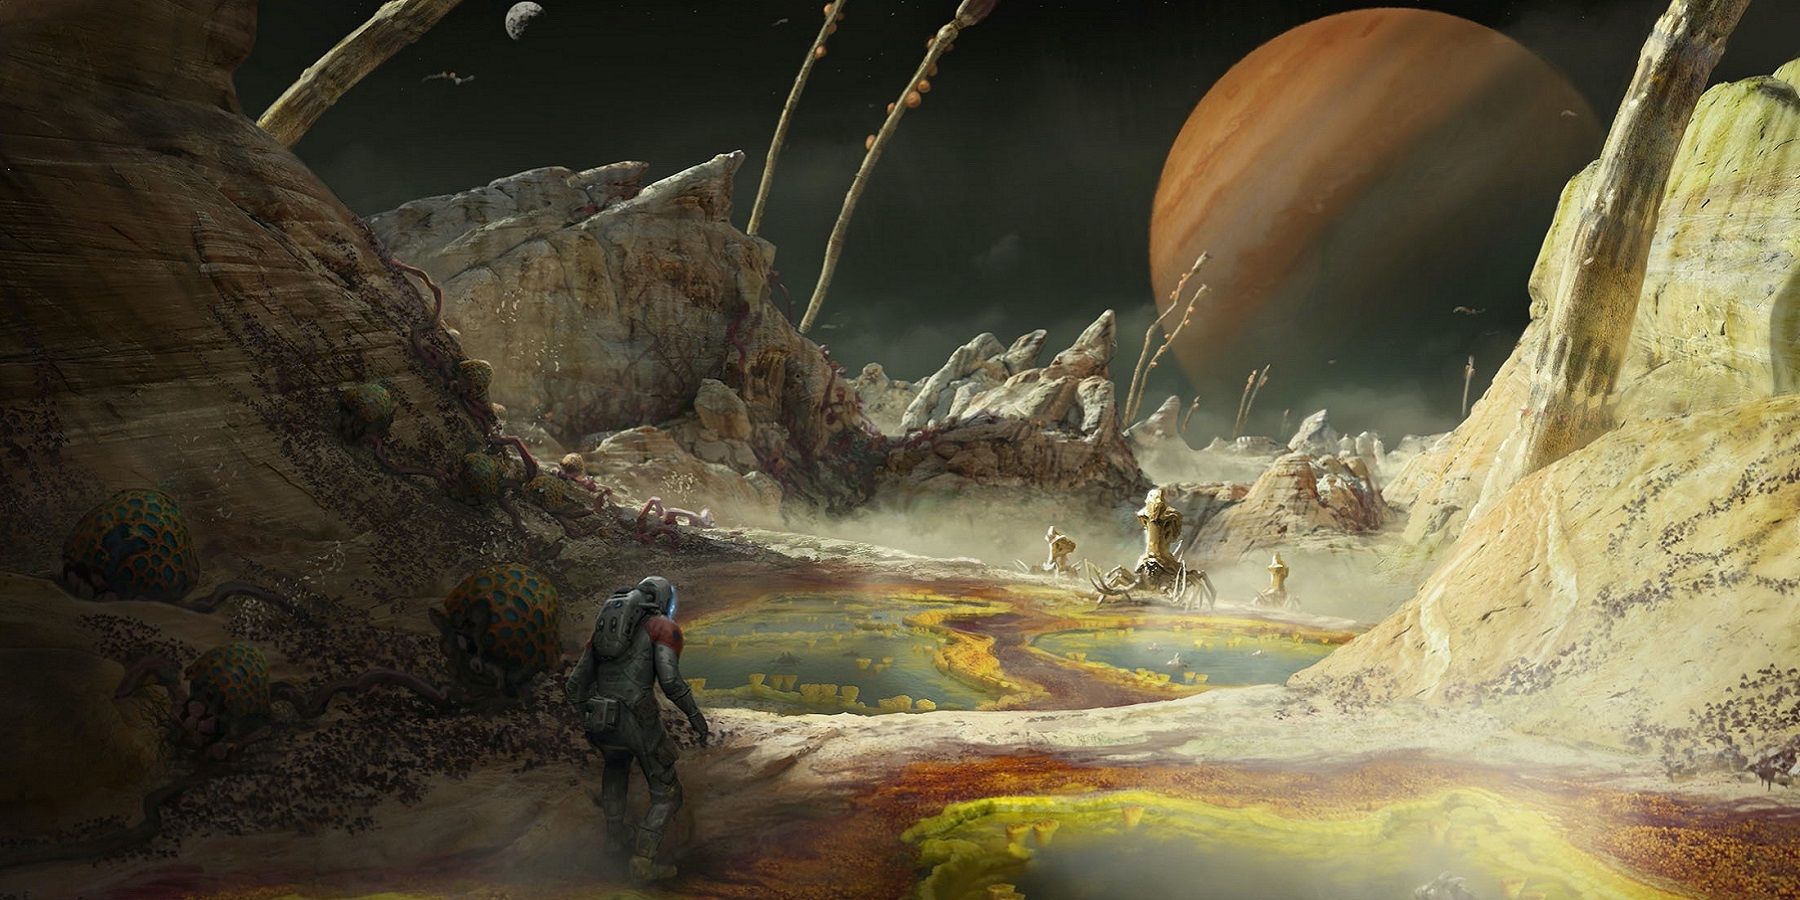 Starfield concept art showing an astronaut on an arid planet.